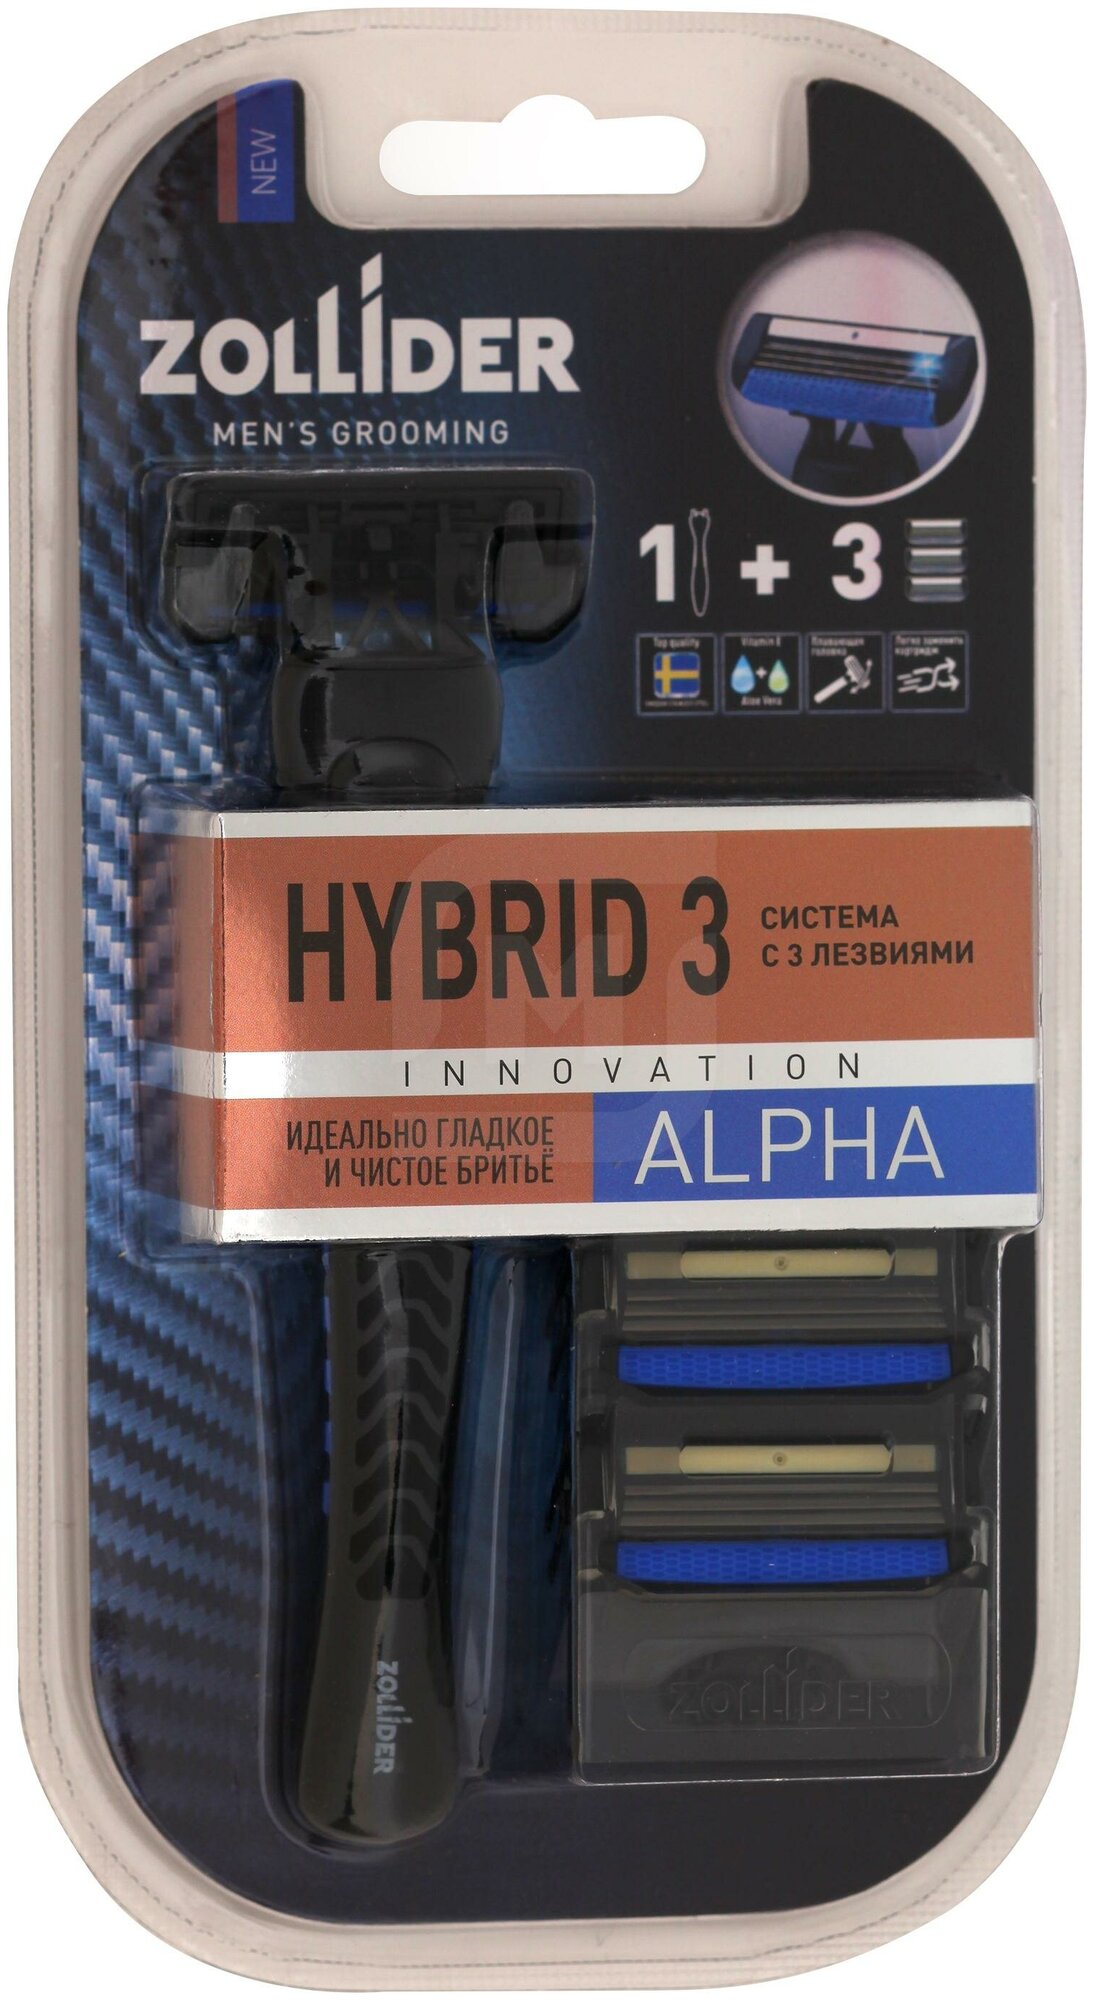 Системный станок Zollider Hybrid 3 ALPHA 3 лезвия с 3мя сменными картриджами - фото №2